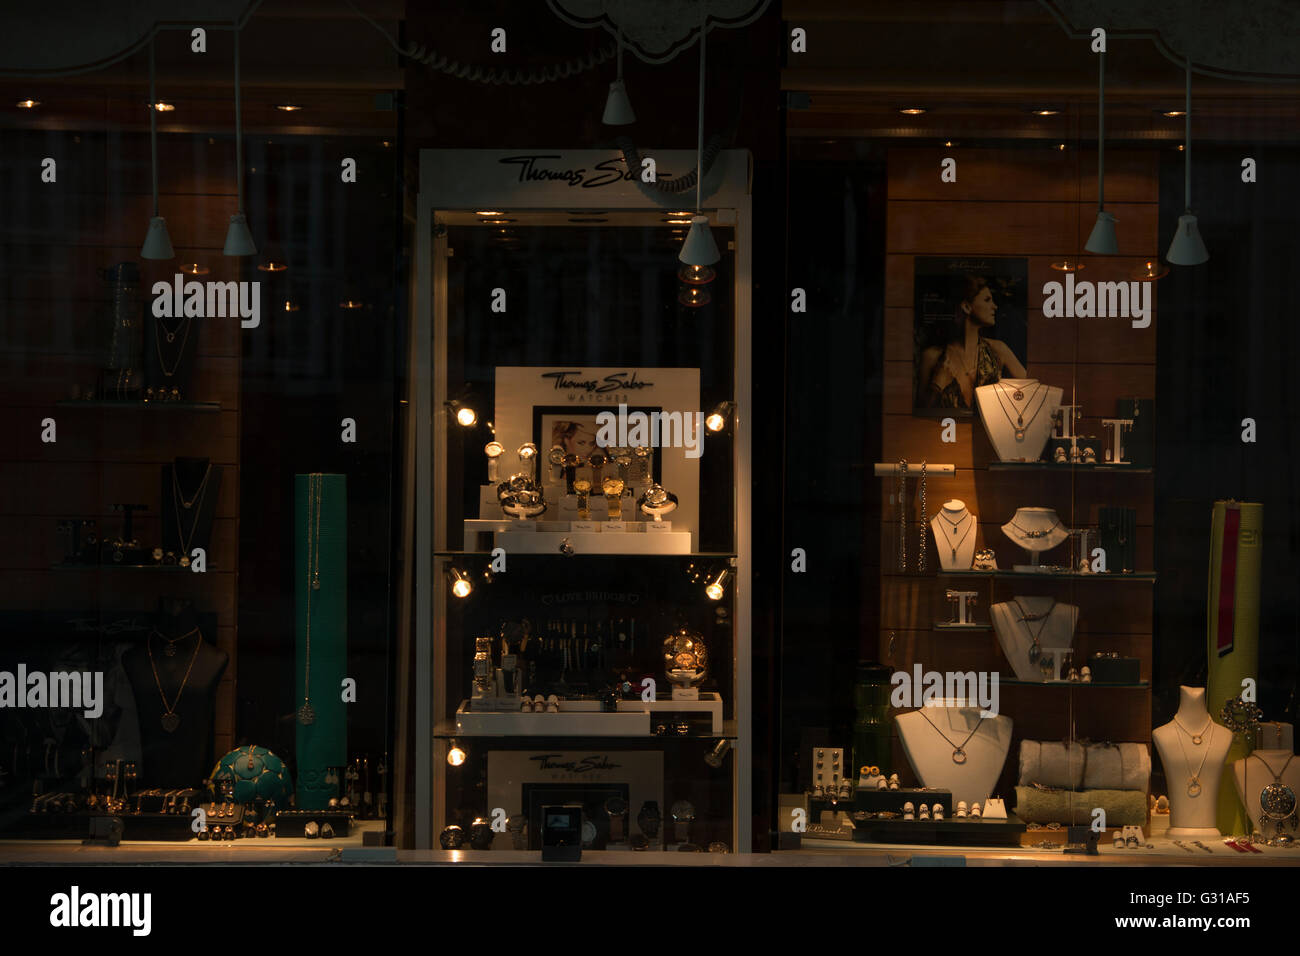 Gioielli e orologi sul display nel negozio Gioielli Foto Stock